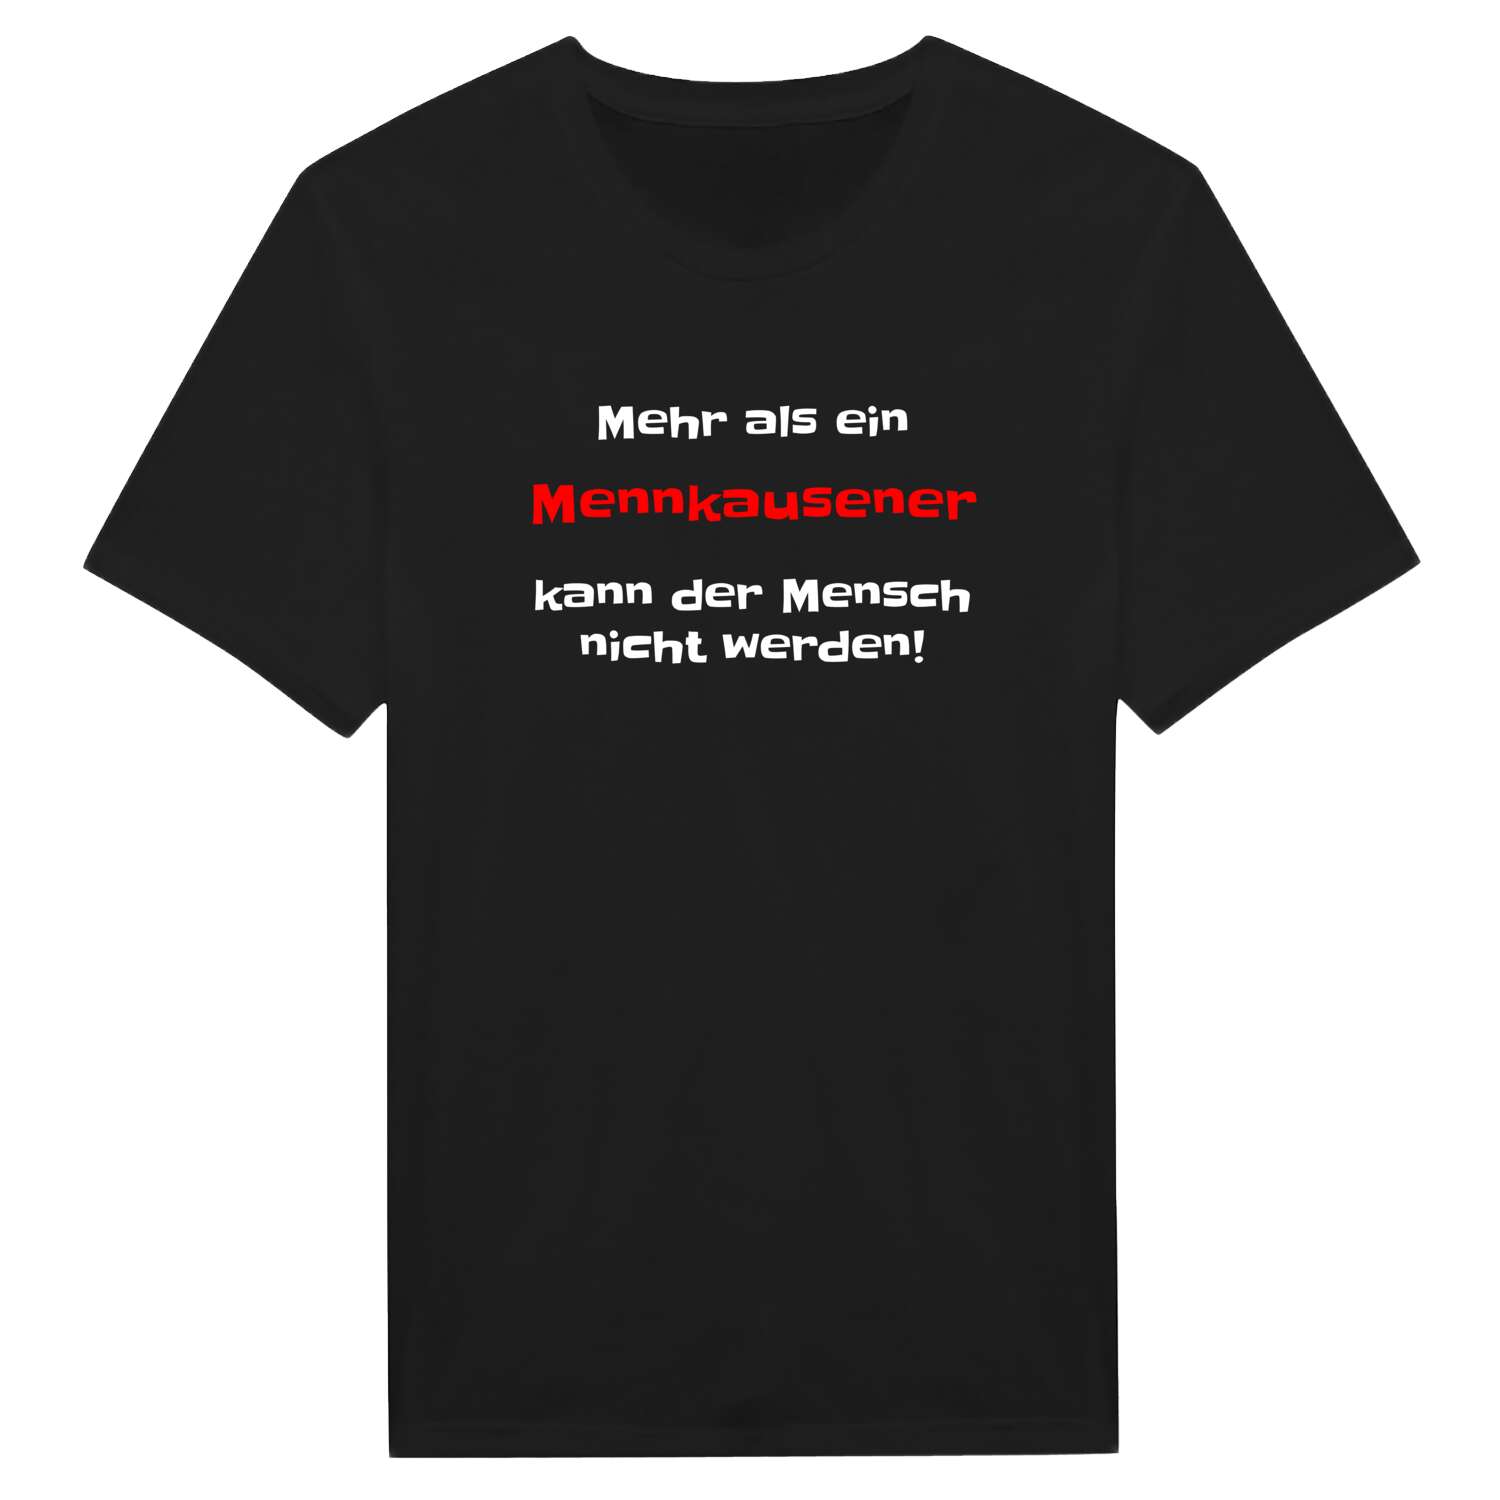 Mennkausen T-Shirt »Mehr als ein«